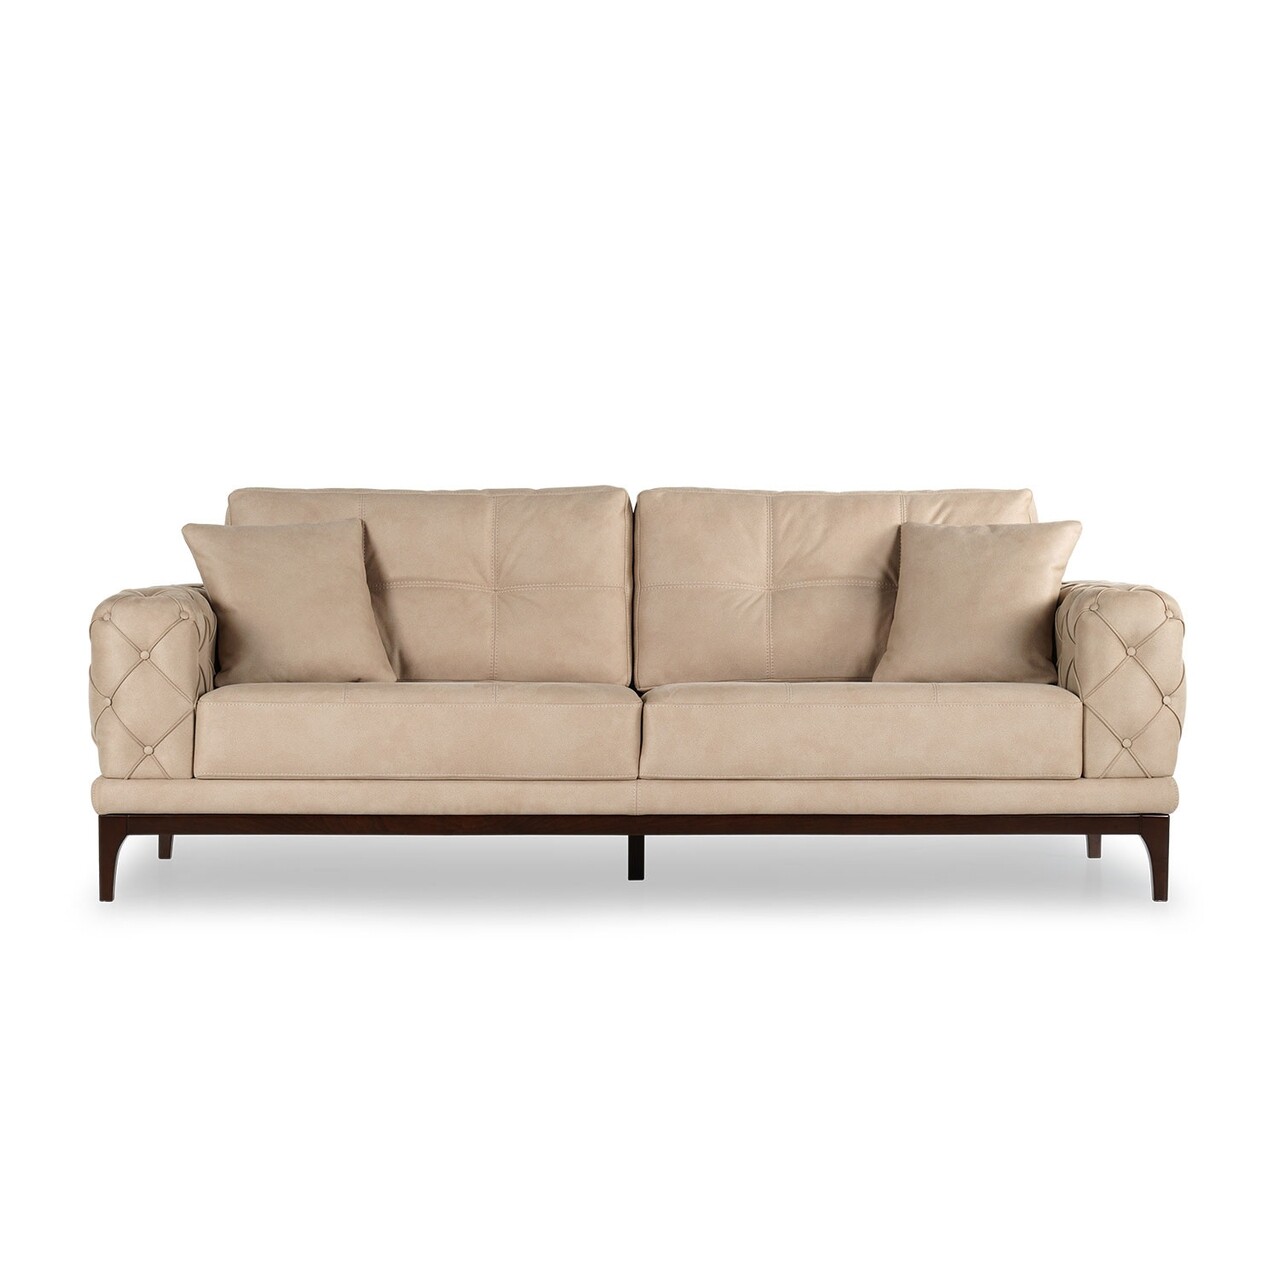 Lale kihúzható kanapé, ndesign, 3 személyes, 220x97x84 cm, fa, krémszín